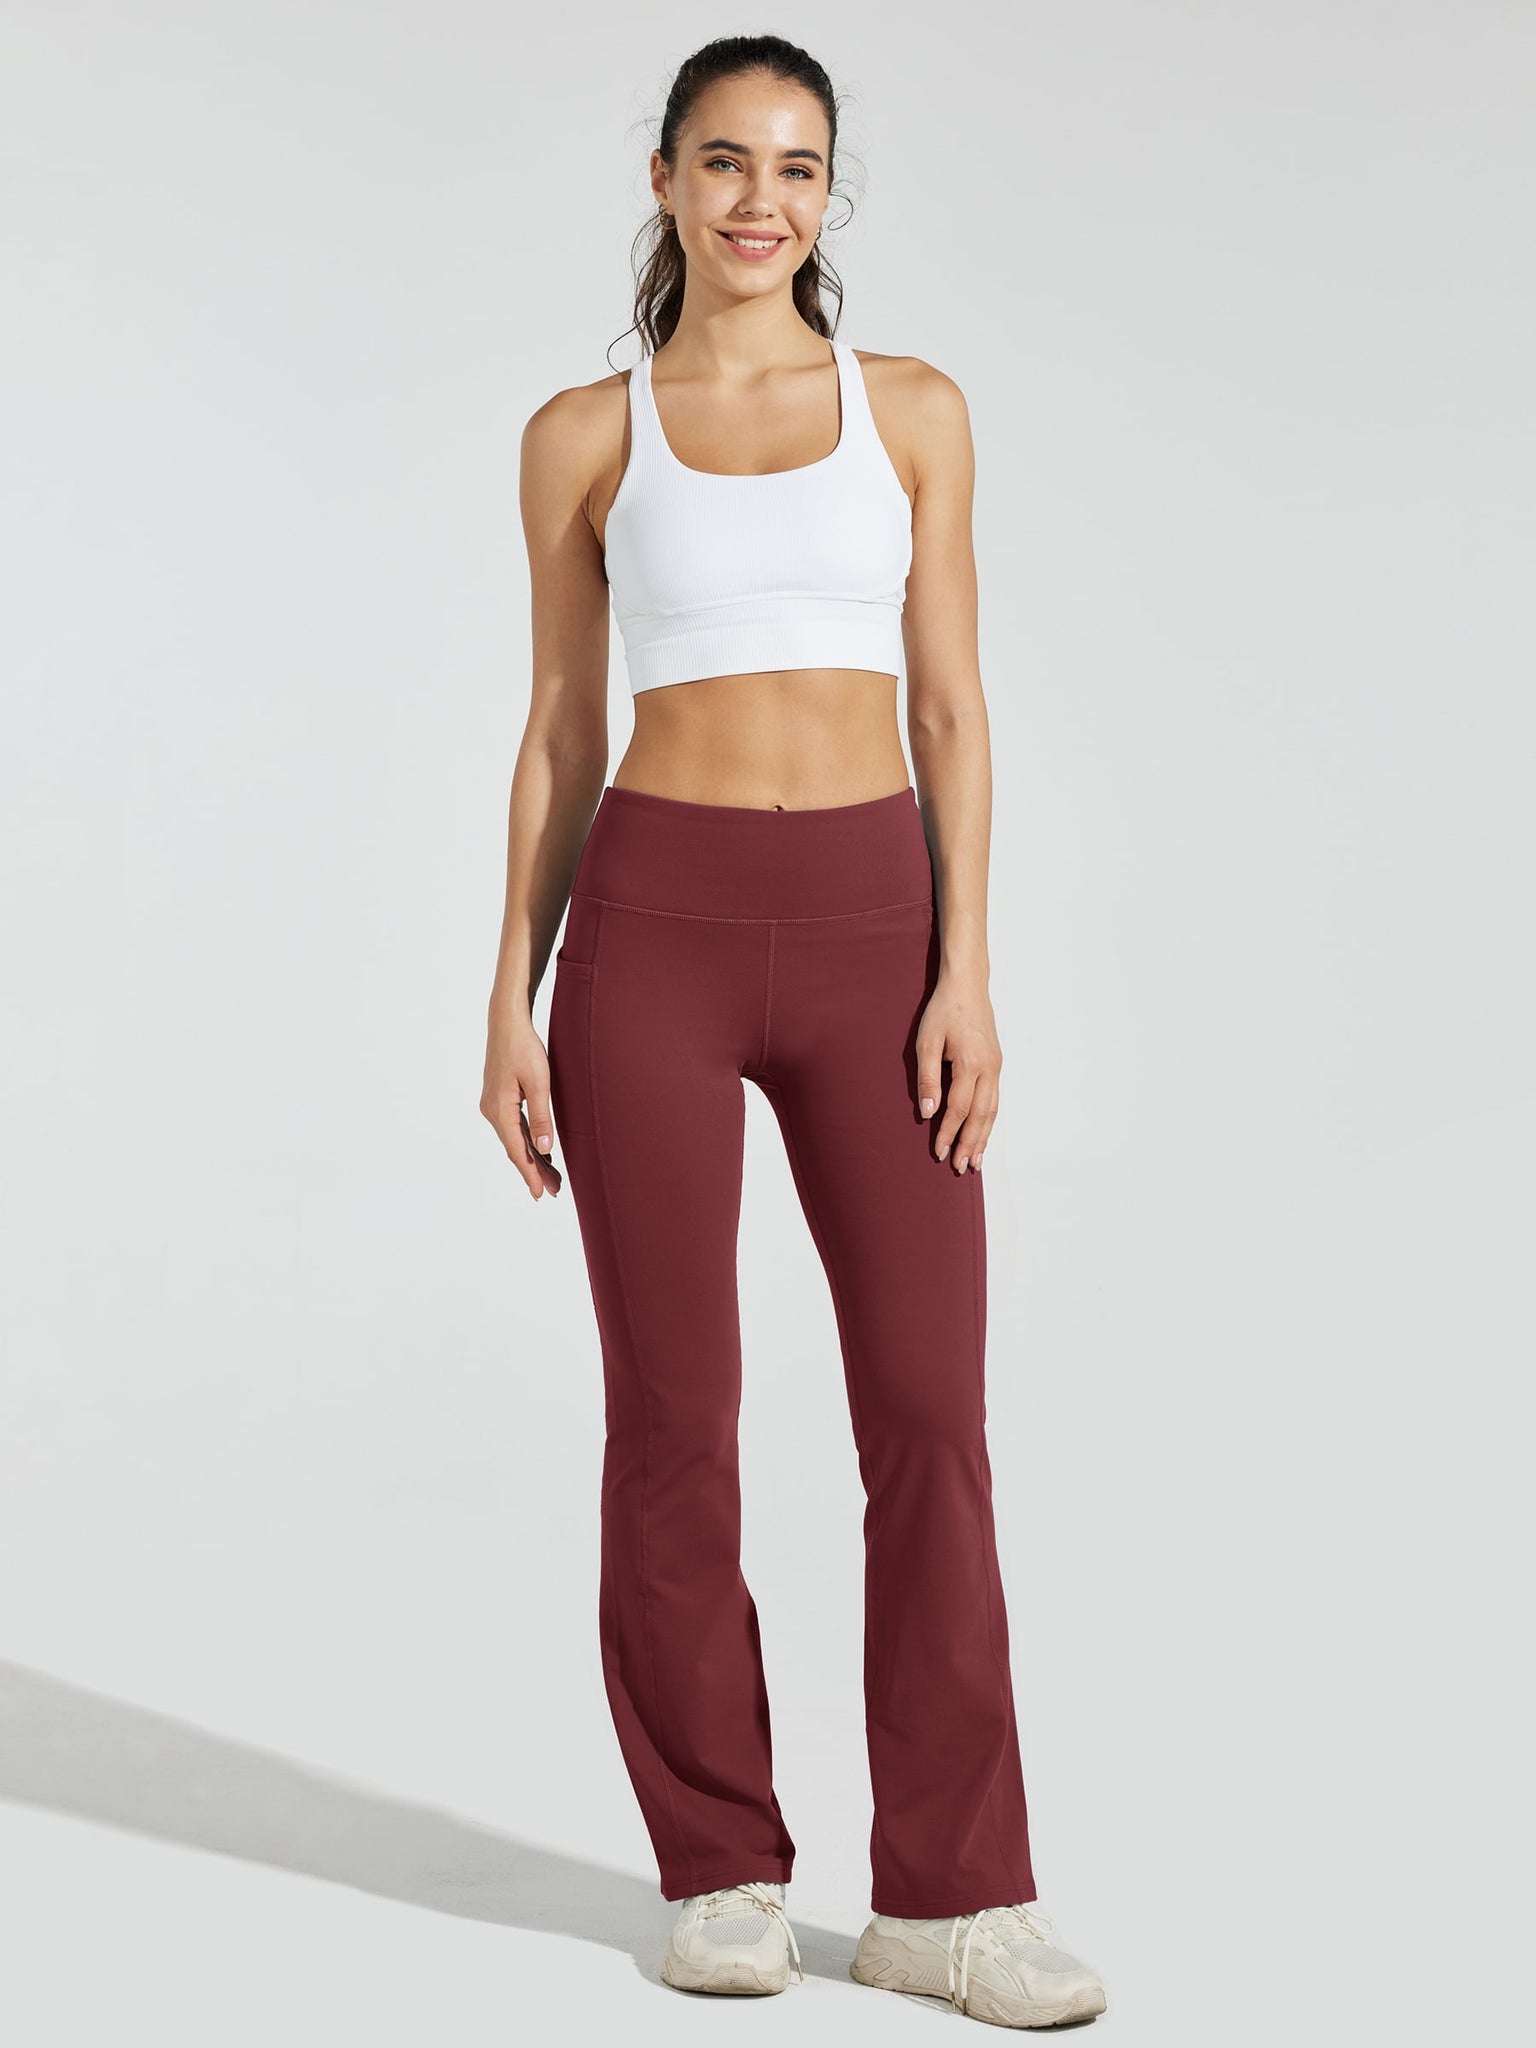 Women's Fleece Lined Bootcut Yoga Pants_WineRed_model5